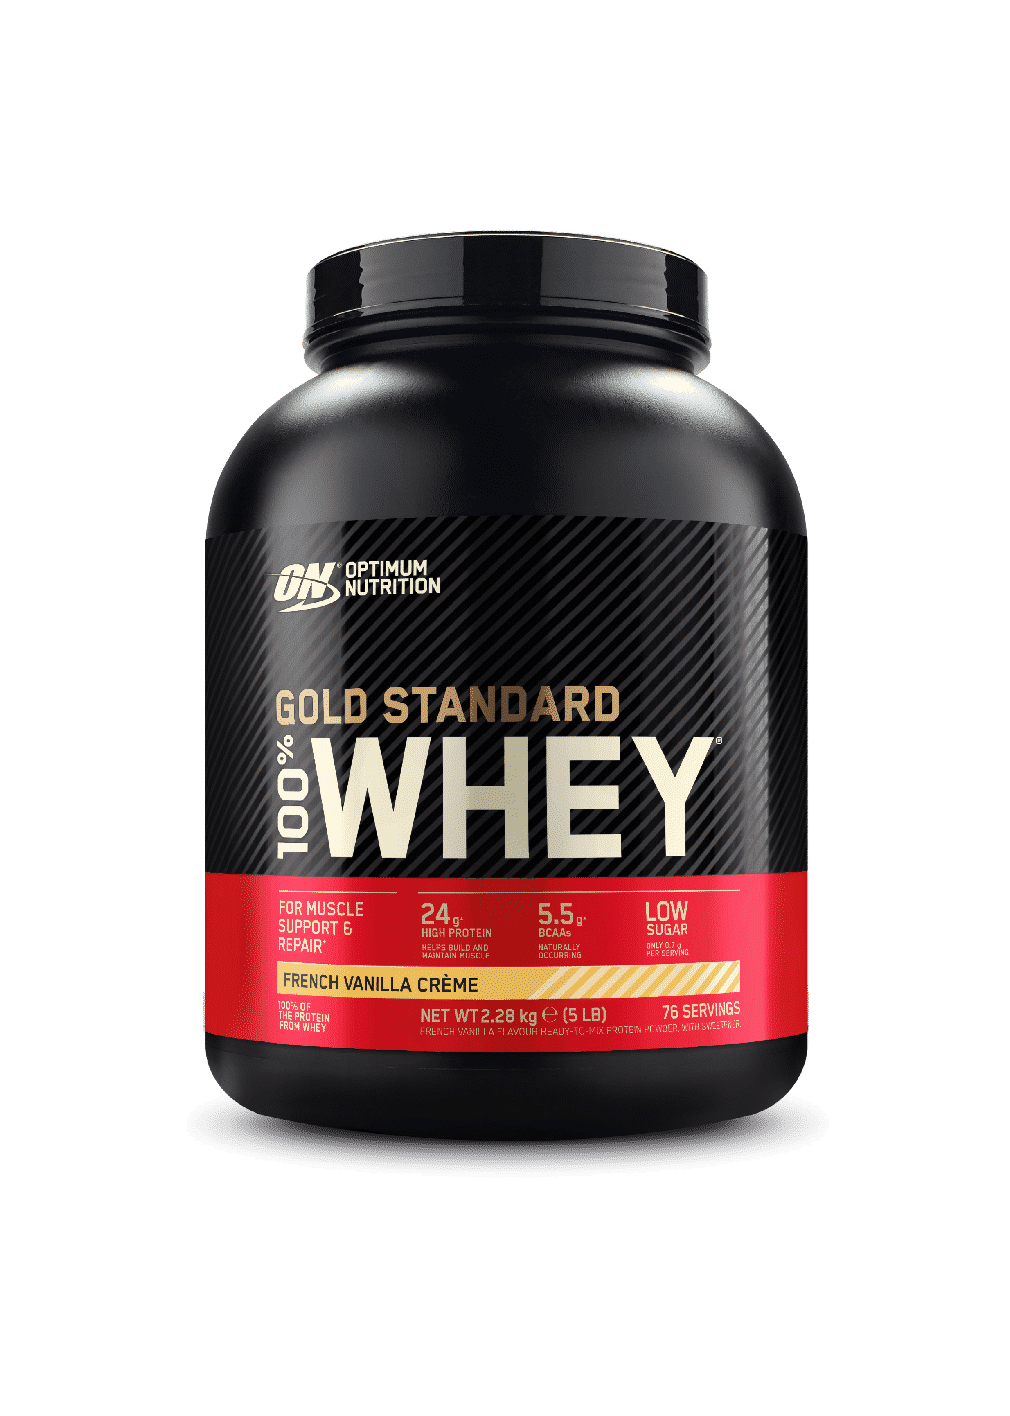 (Optimum Nutrition) Proteína Whey - Proteina de suero de leche Gold Standard (todos los tamaños)